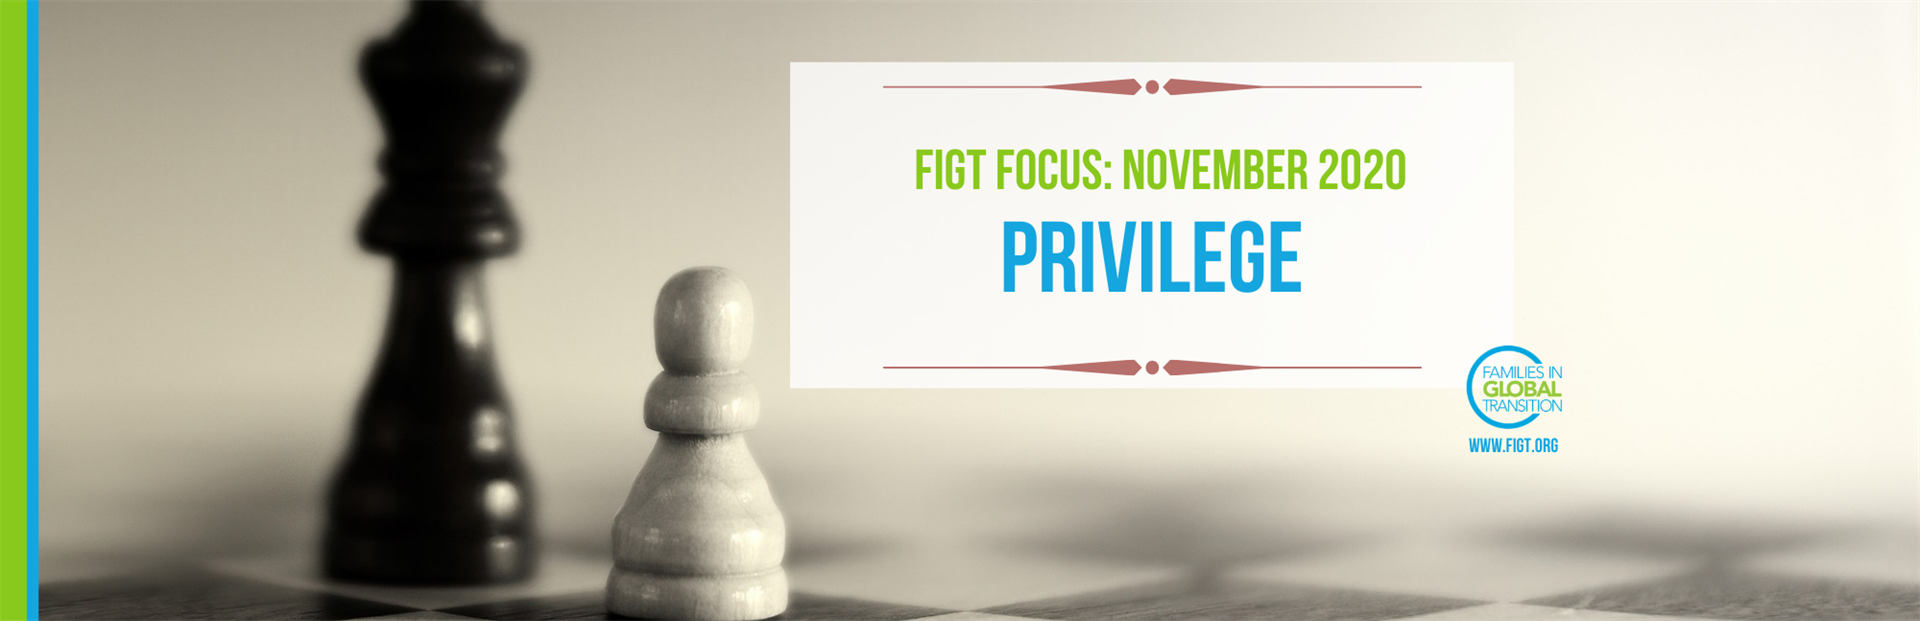 Blog title: FIGT Focus for Nov 2020 is Privilege